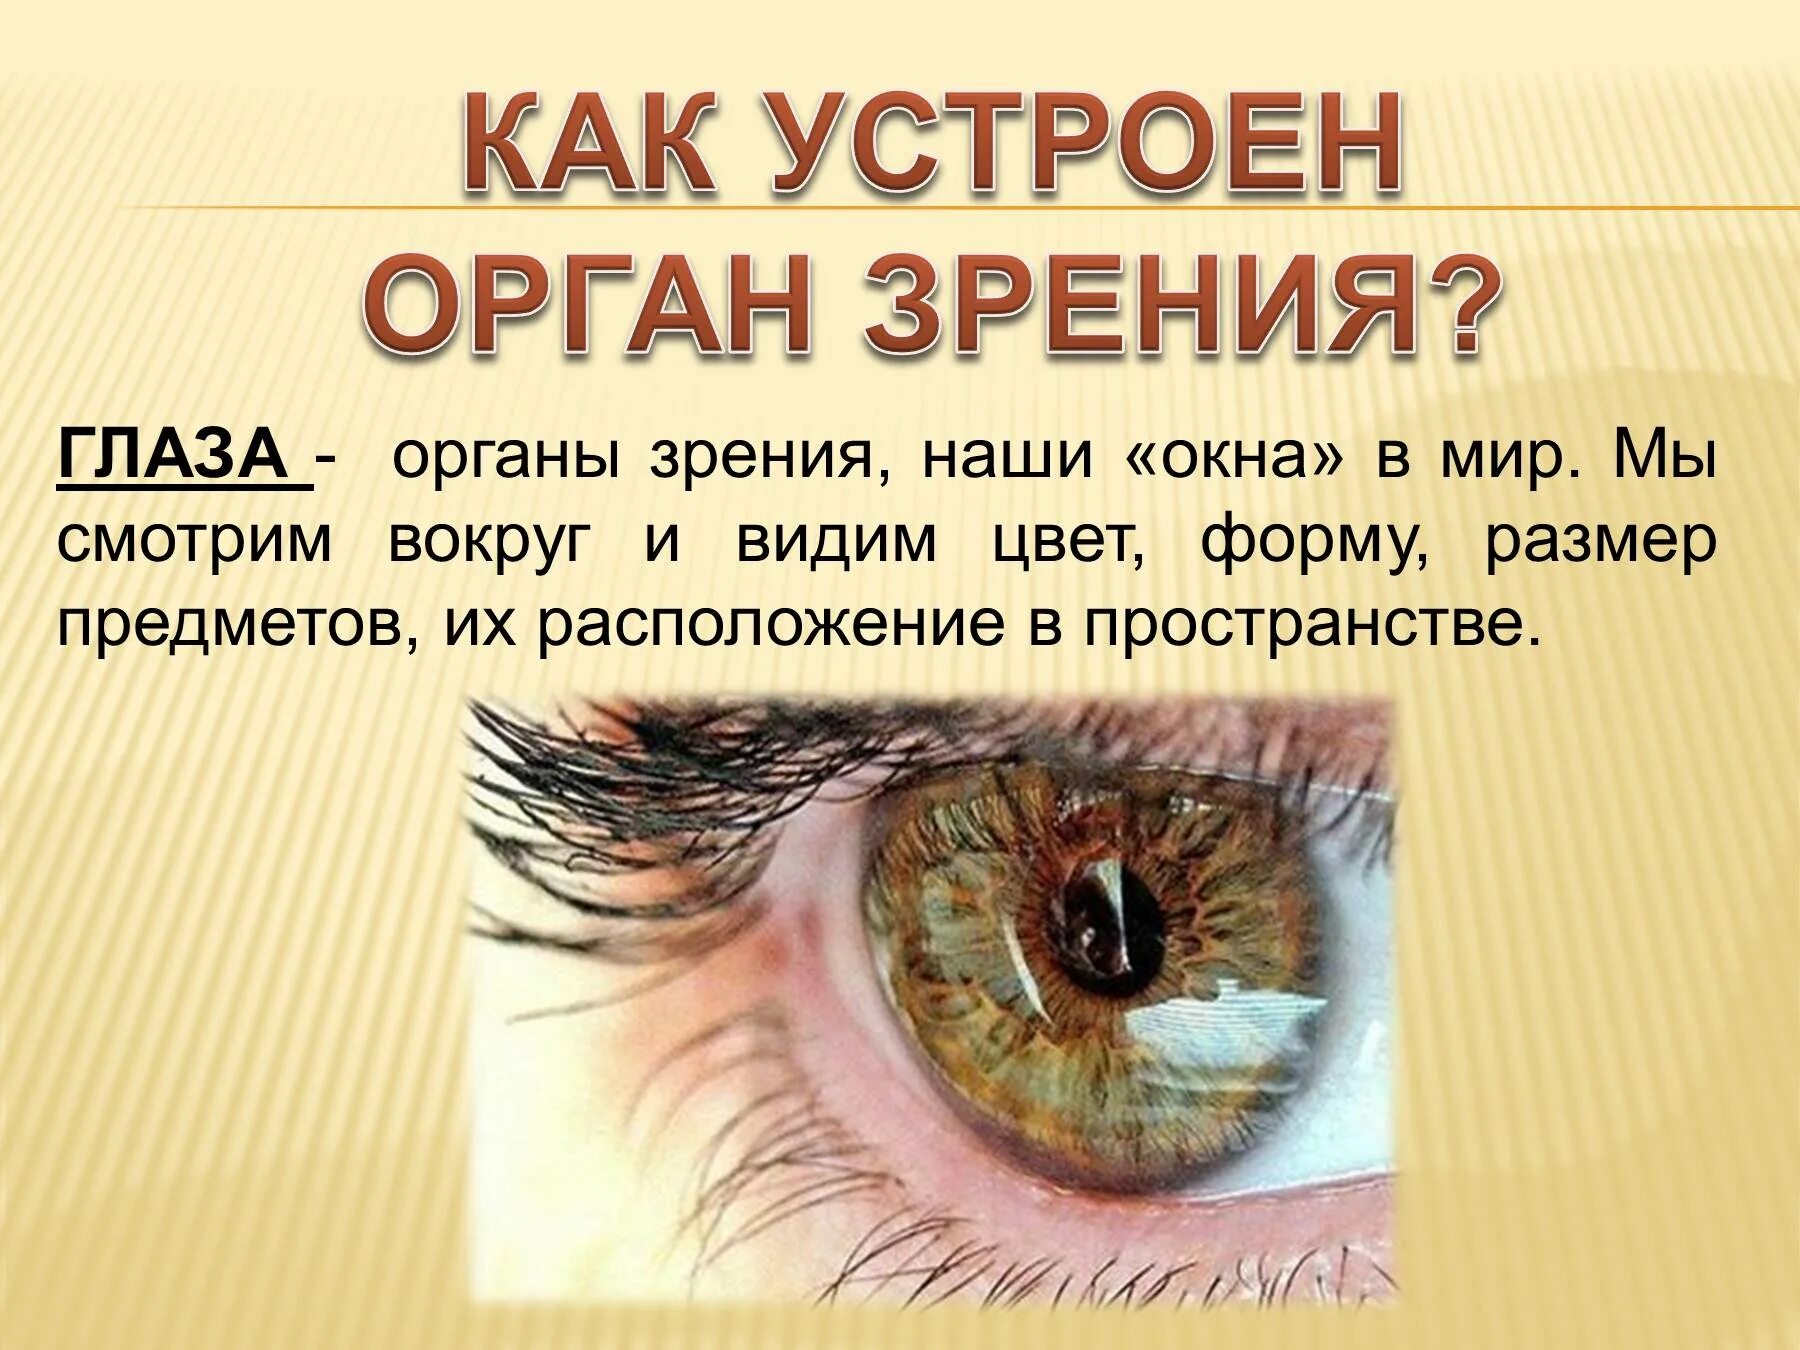 Глаза это орган чувств. Орган зрения презентация. Презентация на тему зрение человека. Презентация на тему органы зрения. Органы чувств глаза.